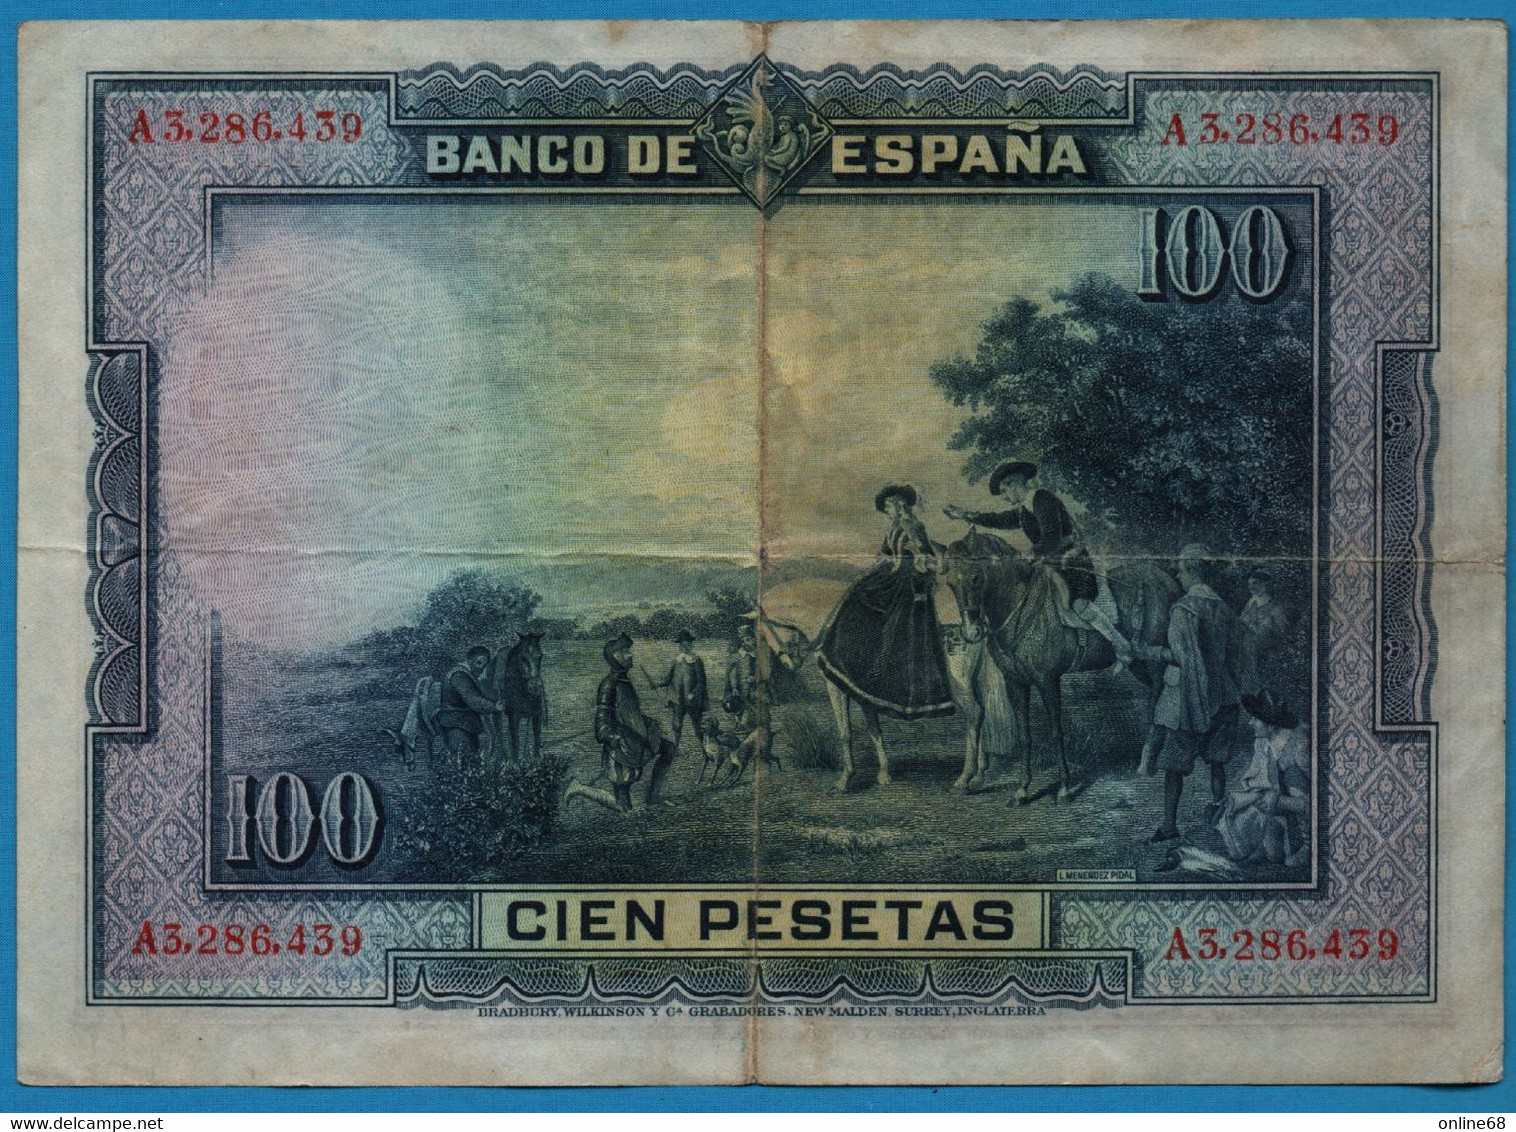 ESPANA 100 PESETAS 15.08.1928 # A3286439 P# 76 Miguel De Cervantes - 100 Peseten